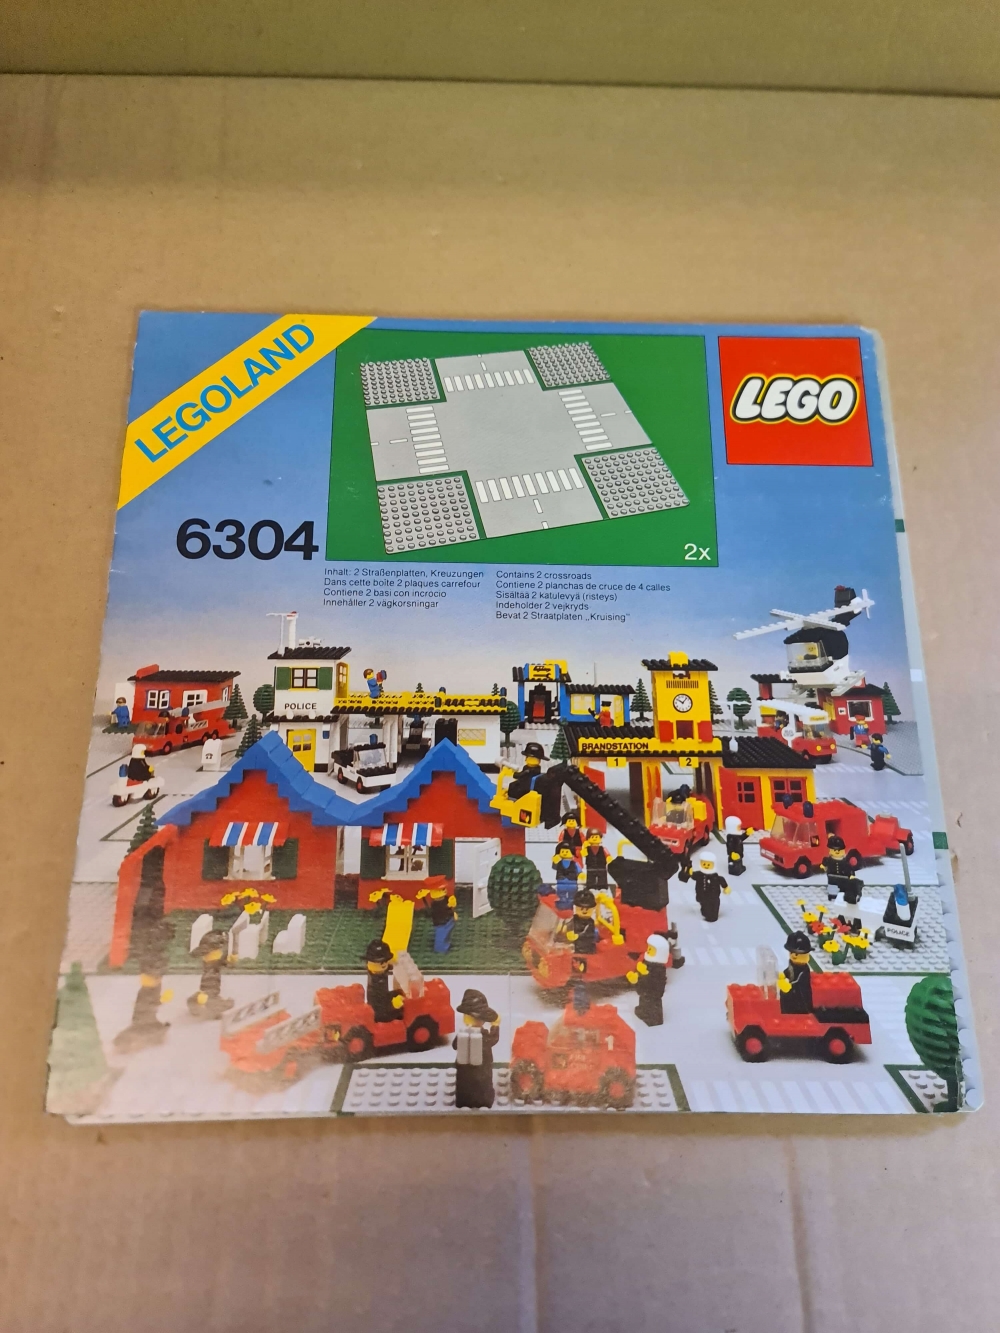 Sett 6304 fra Lego Classic Town serien.
Meget pent. Med omslag. Ser nesten nytt ut.